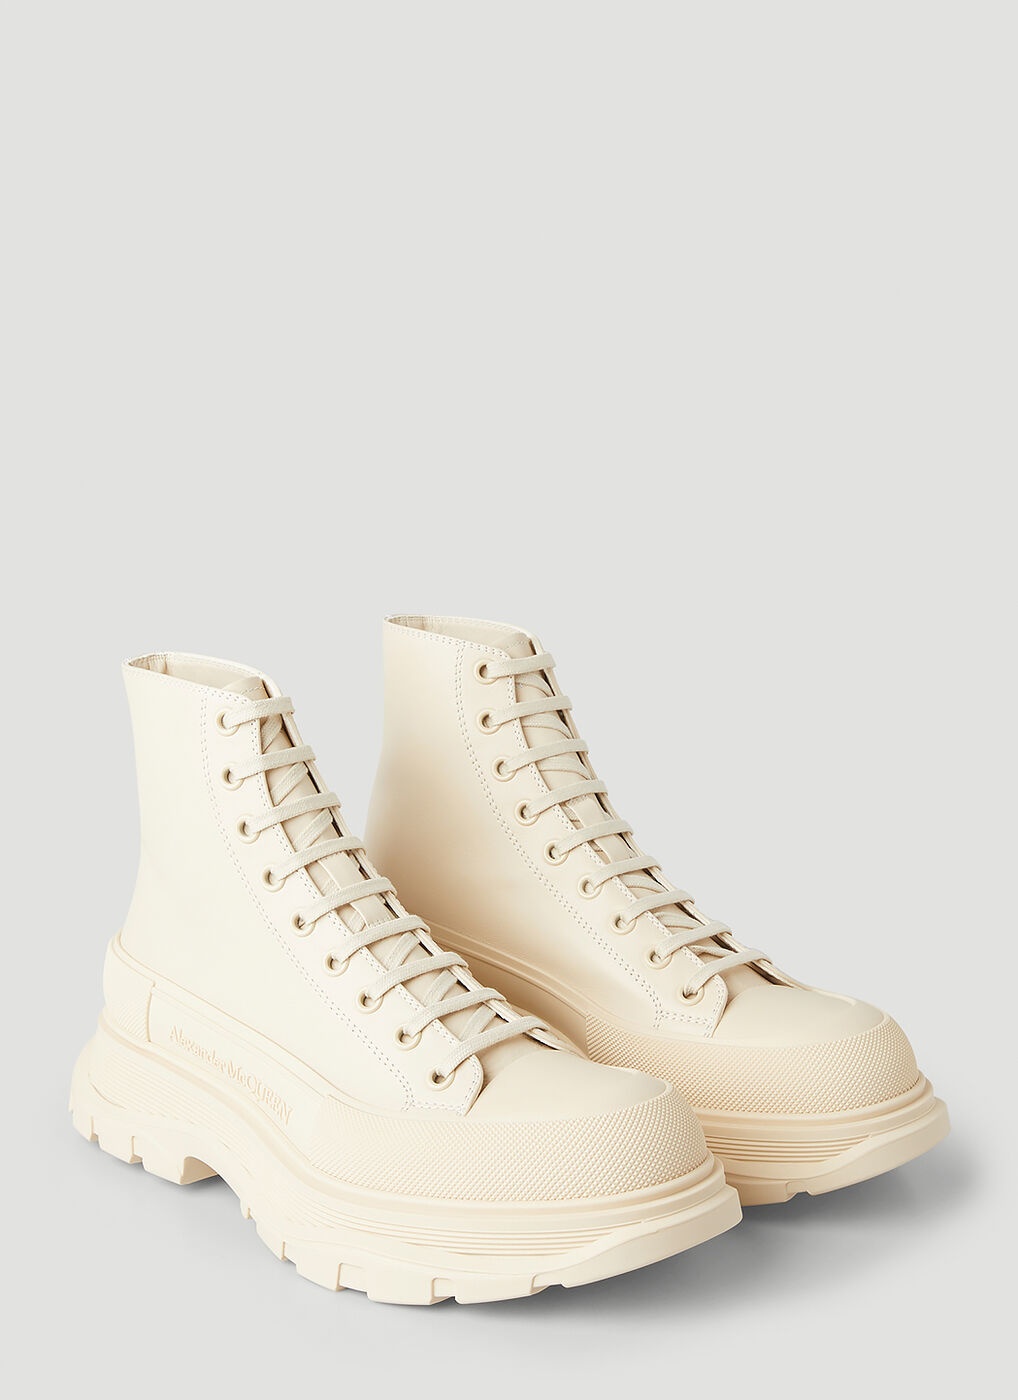 Tread Slick Boots in White Alexander McQueen